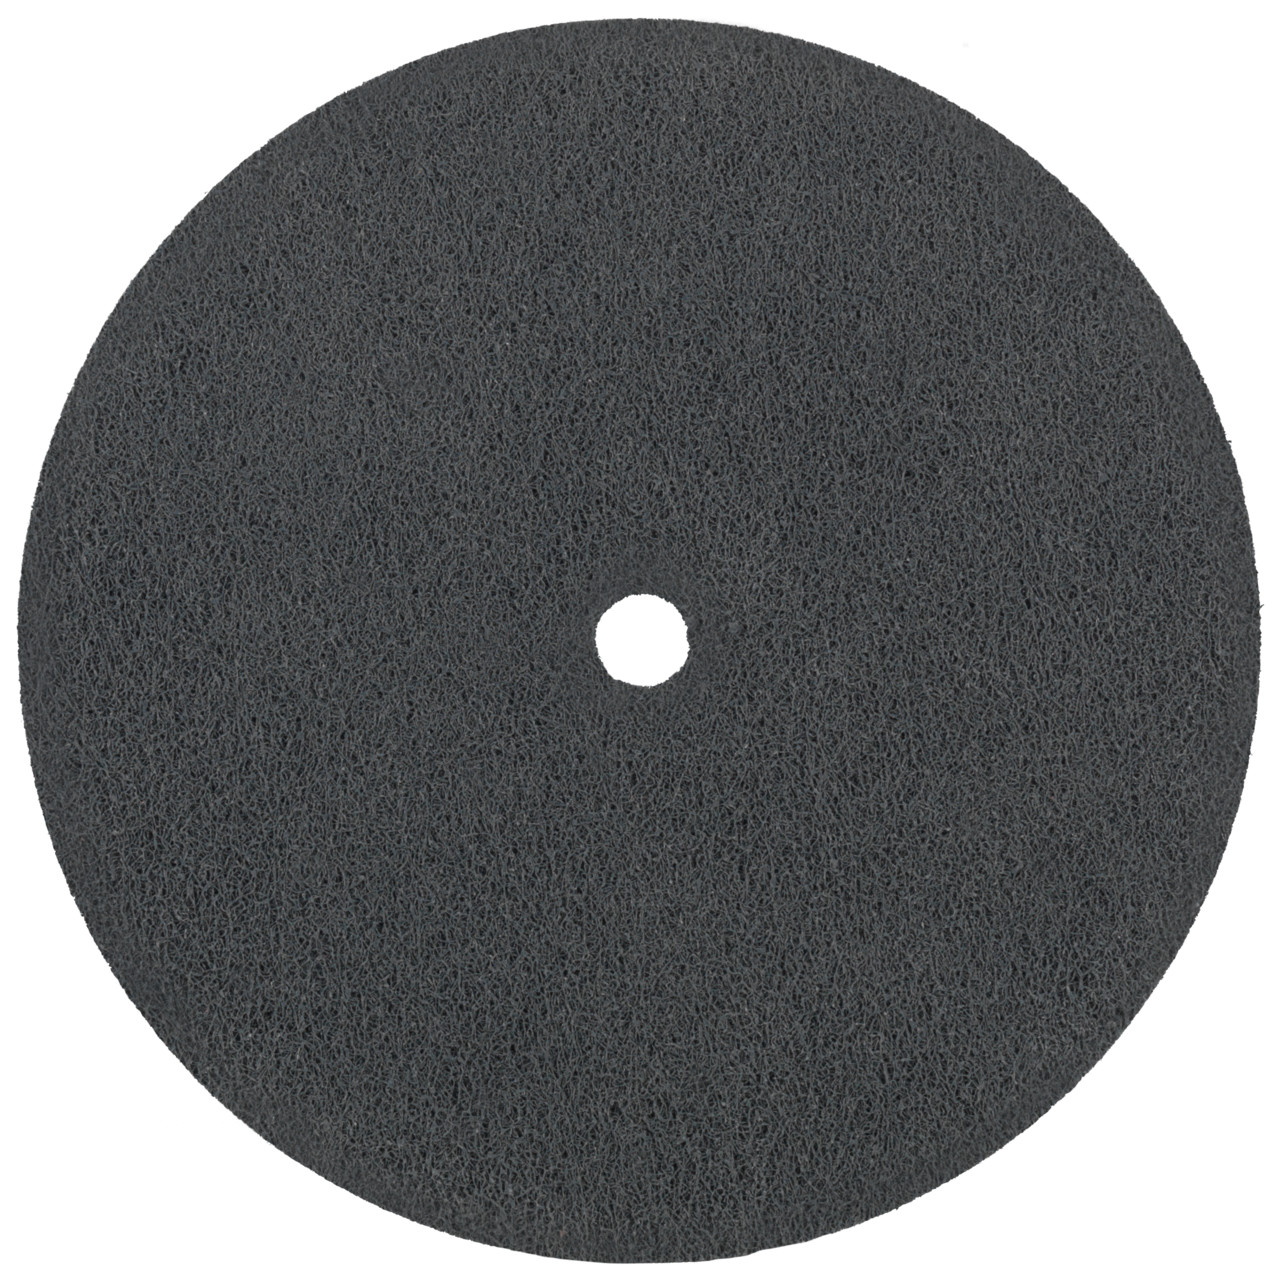 Tyrolit Discos compactos prensados DxDxH 152x25x25,4 Inserto universal, 8 A GROB, forma: 1, Art. 34190310